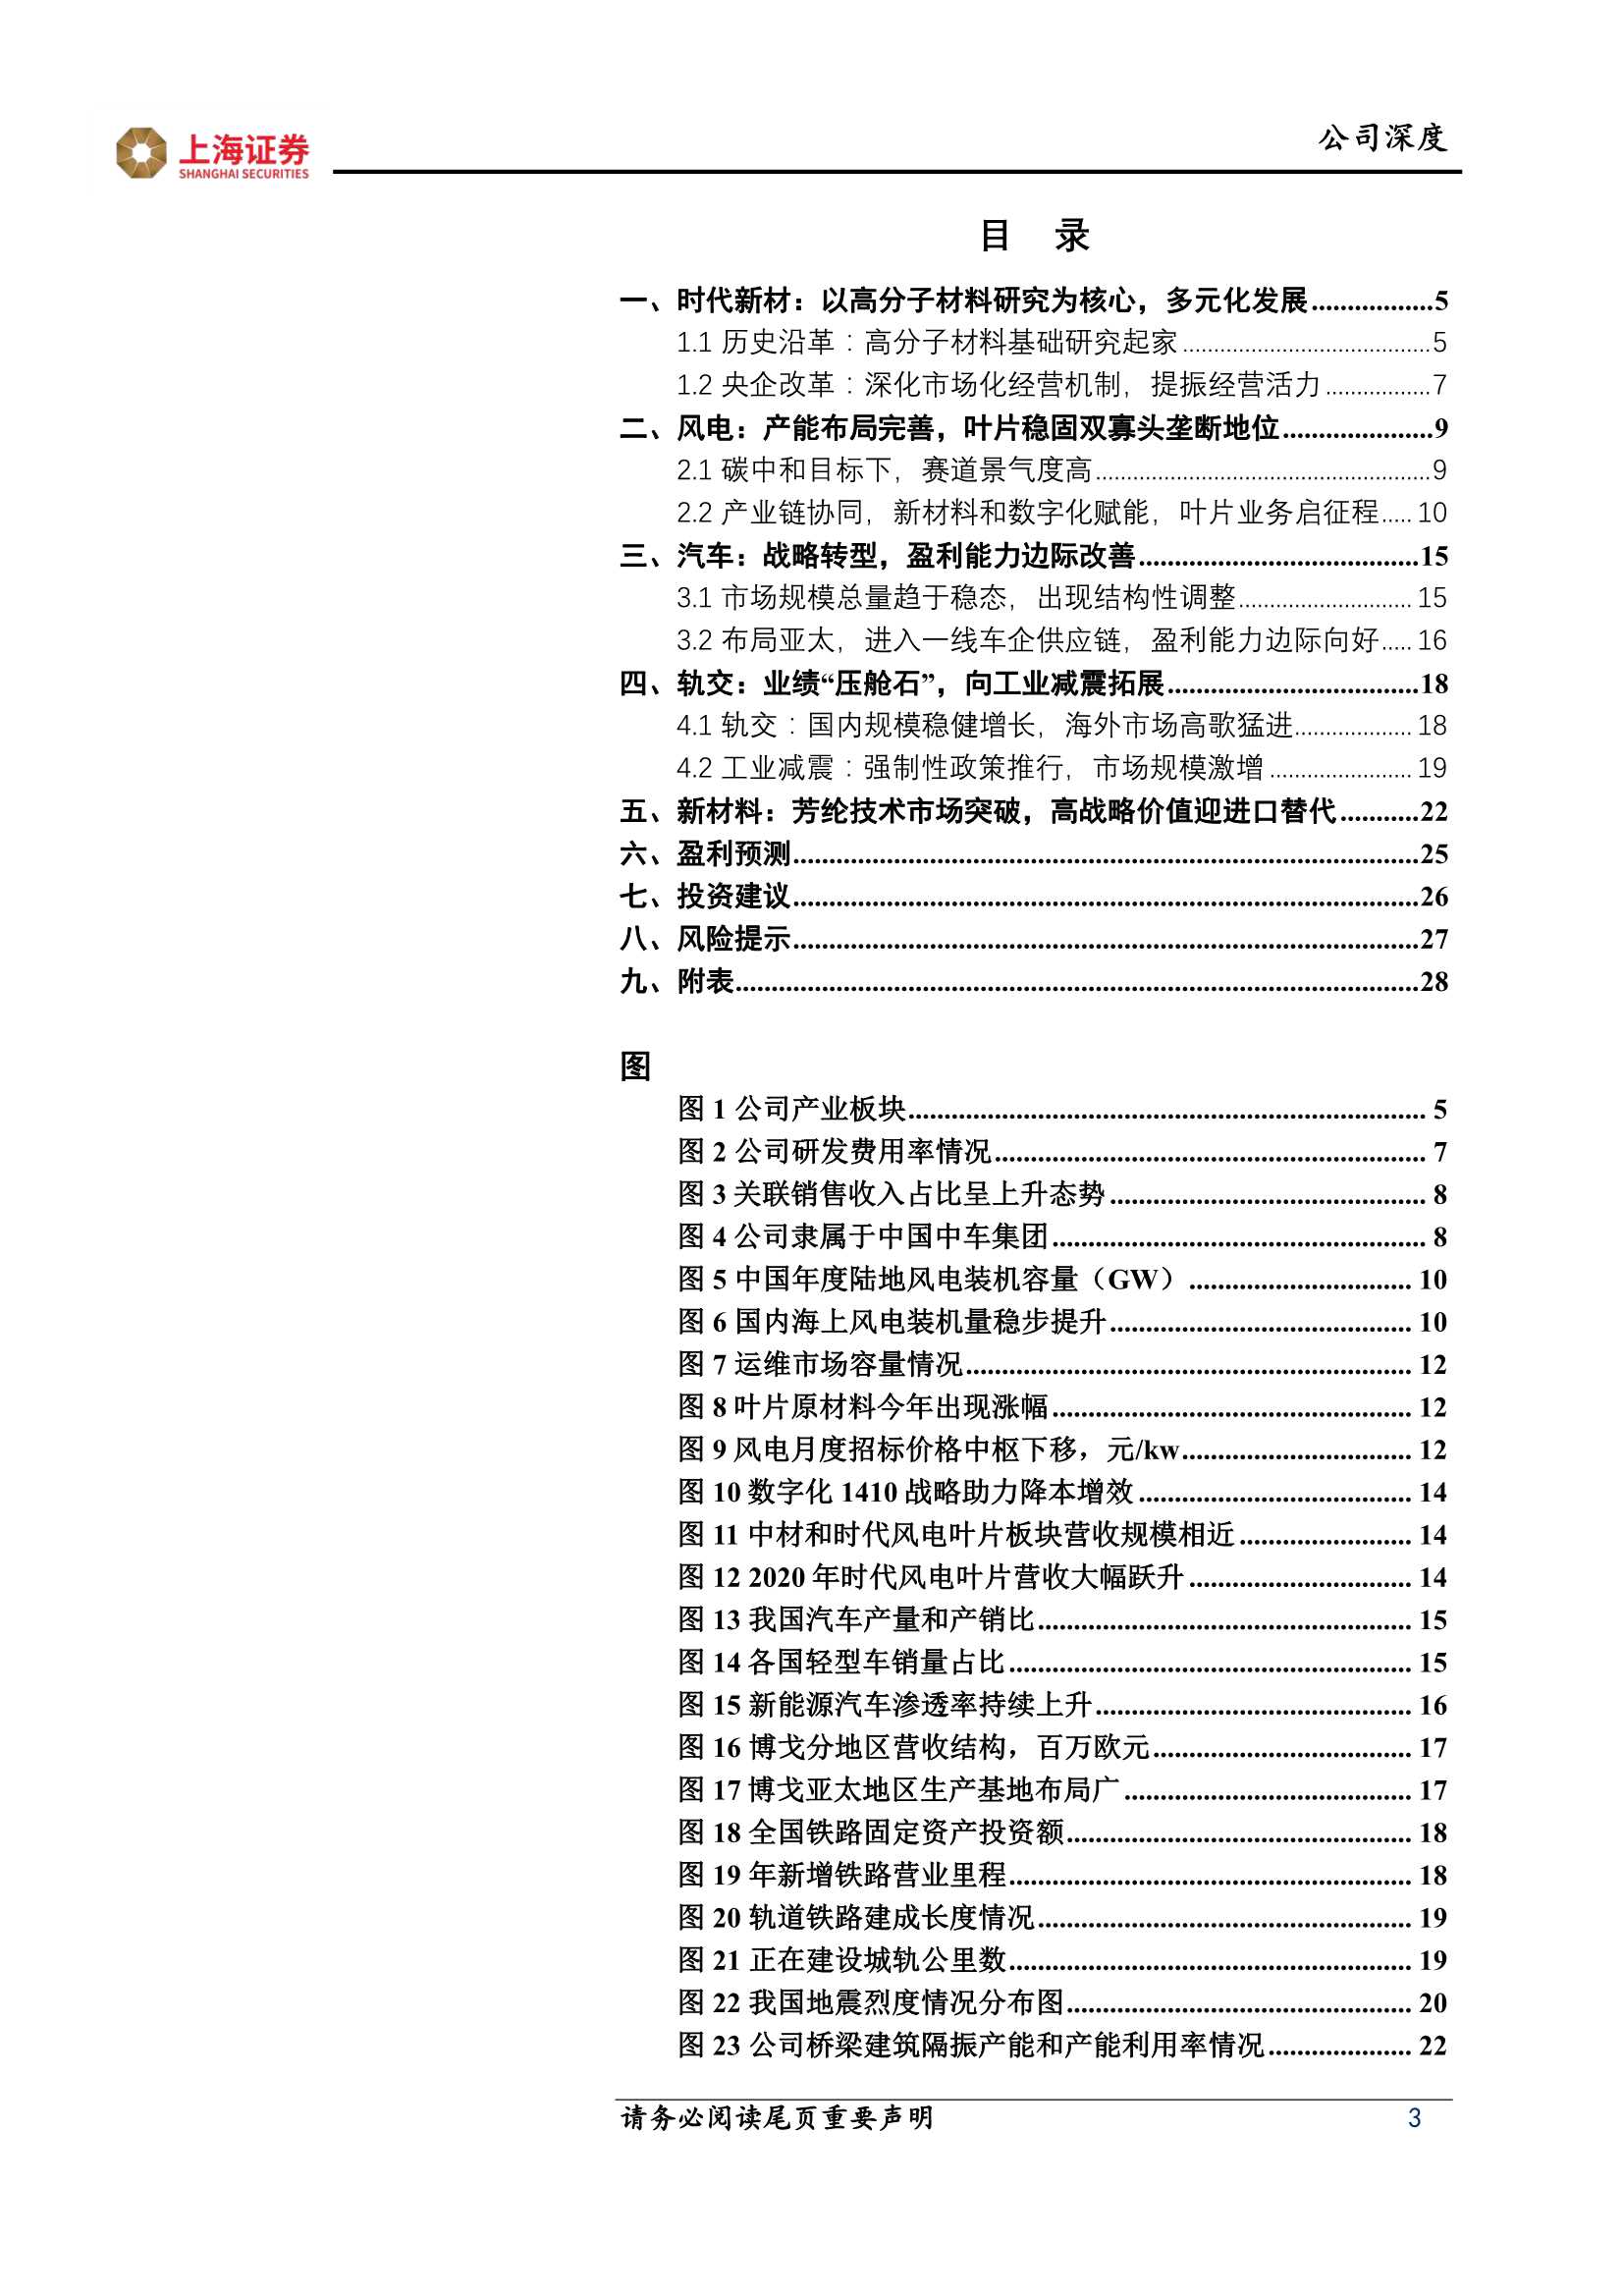 上海证券-时代新材-600458-“改革、减隔震、风电、新材料”四轮驱动，开启新“时代”-20211203-29页